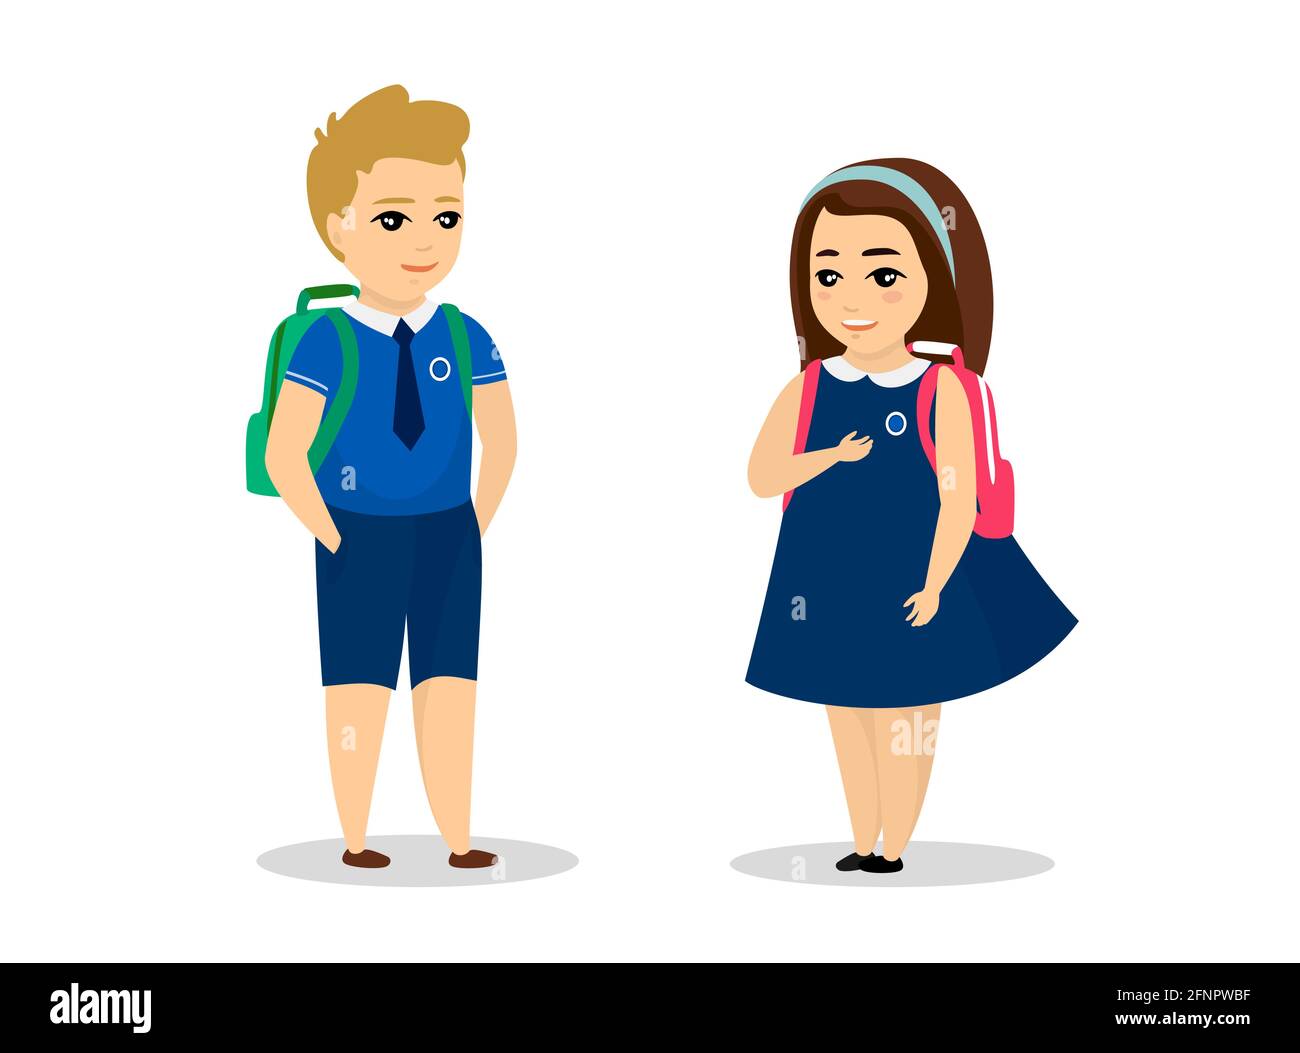 El colegial y la colegiala se ponen de con un uniforme azul. Lindo dibujo animado sonriente niño y niña escolar con bolsa escuela. Niño niña feliz alumno. Los